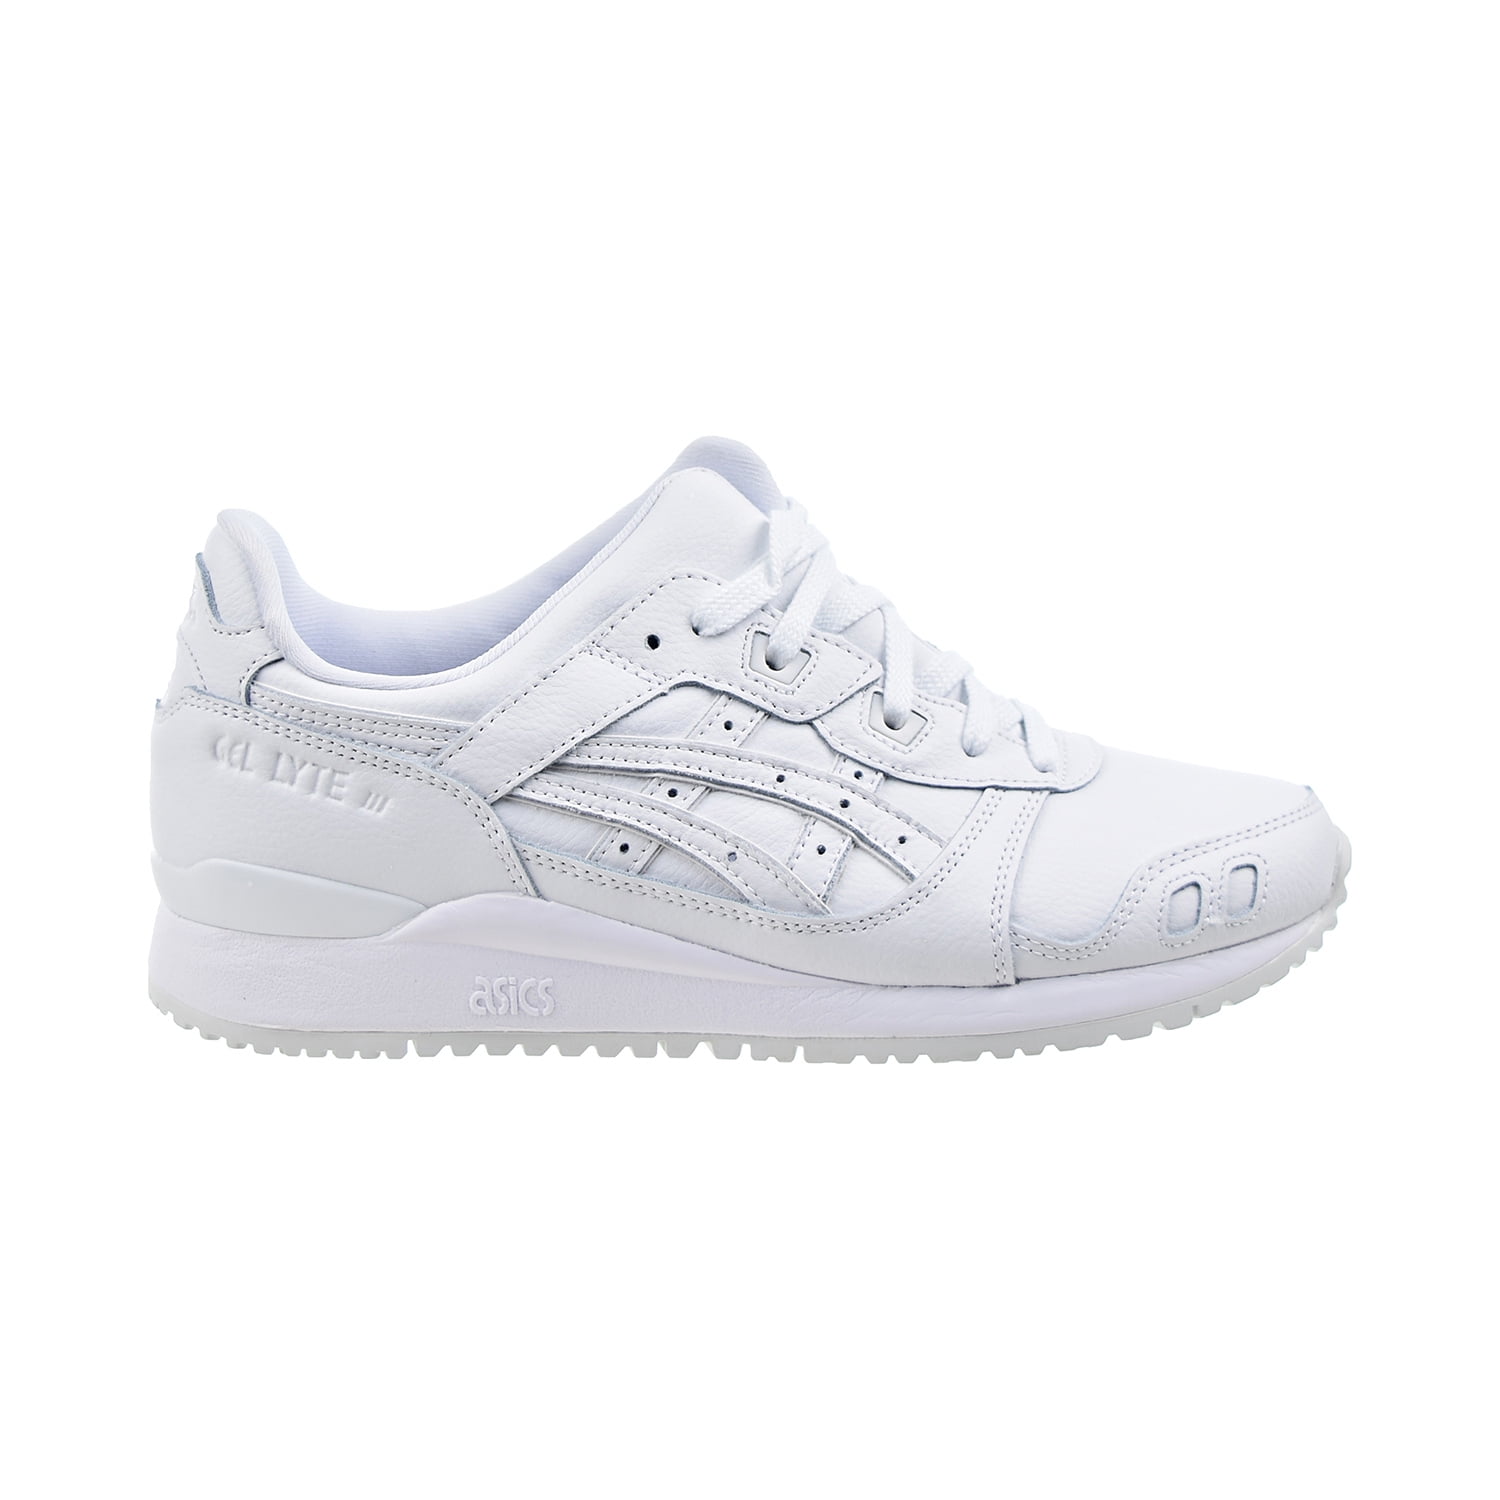 Asics Gel-Lyte III OG 1201A257-100 Men Triple White Leather Sneaker Shoes  NR5056 (7.5)